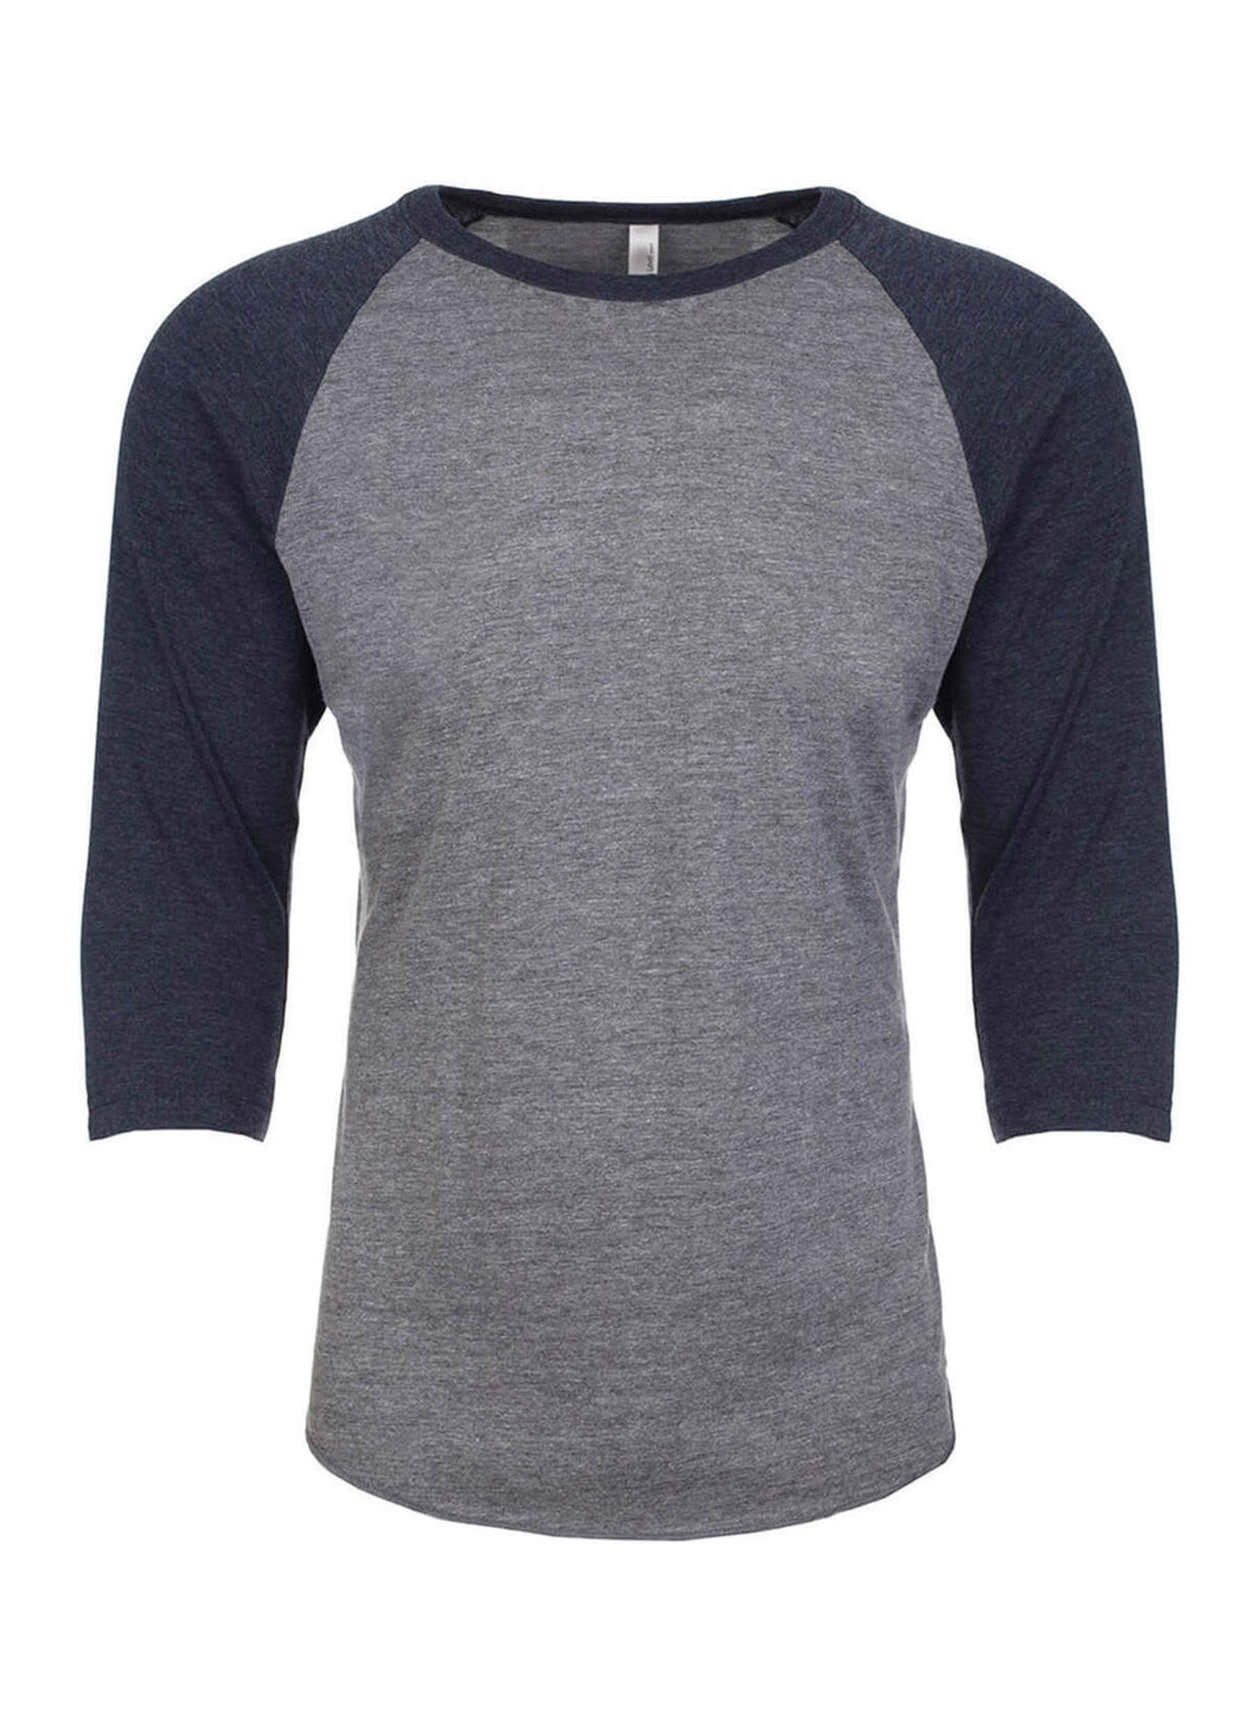 Next Level Men's Vintage Navy / Premium Heather Unisex Triblend 3/4-Sleeve Raglan T-Shirt